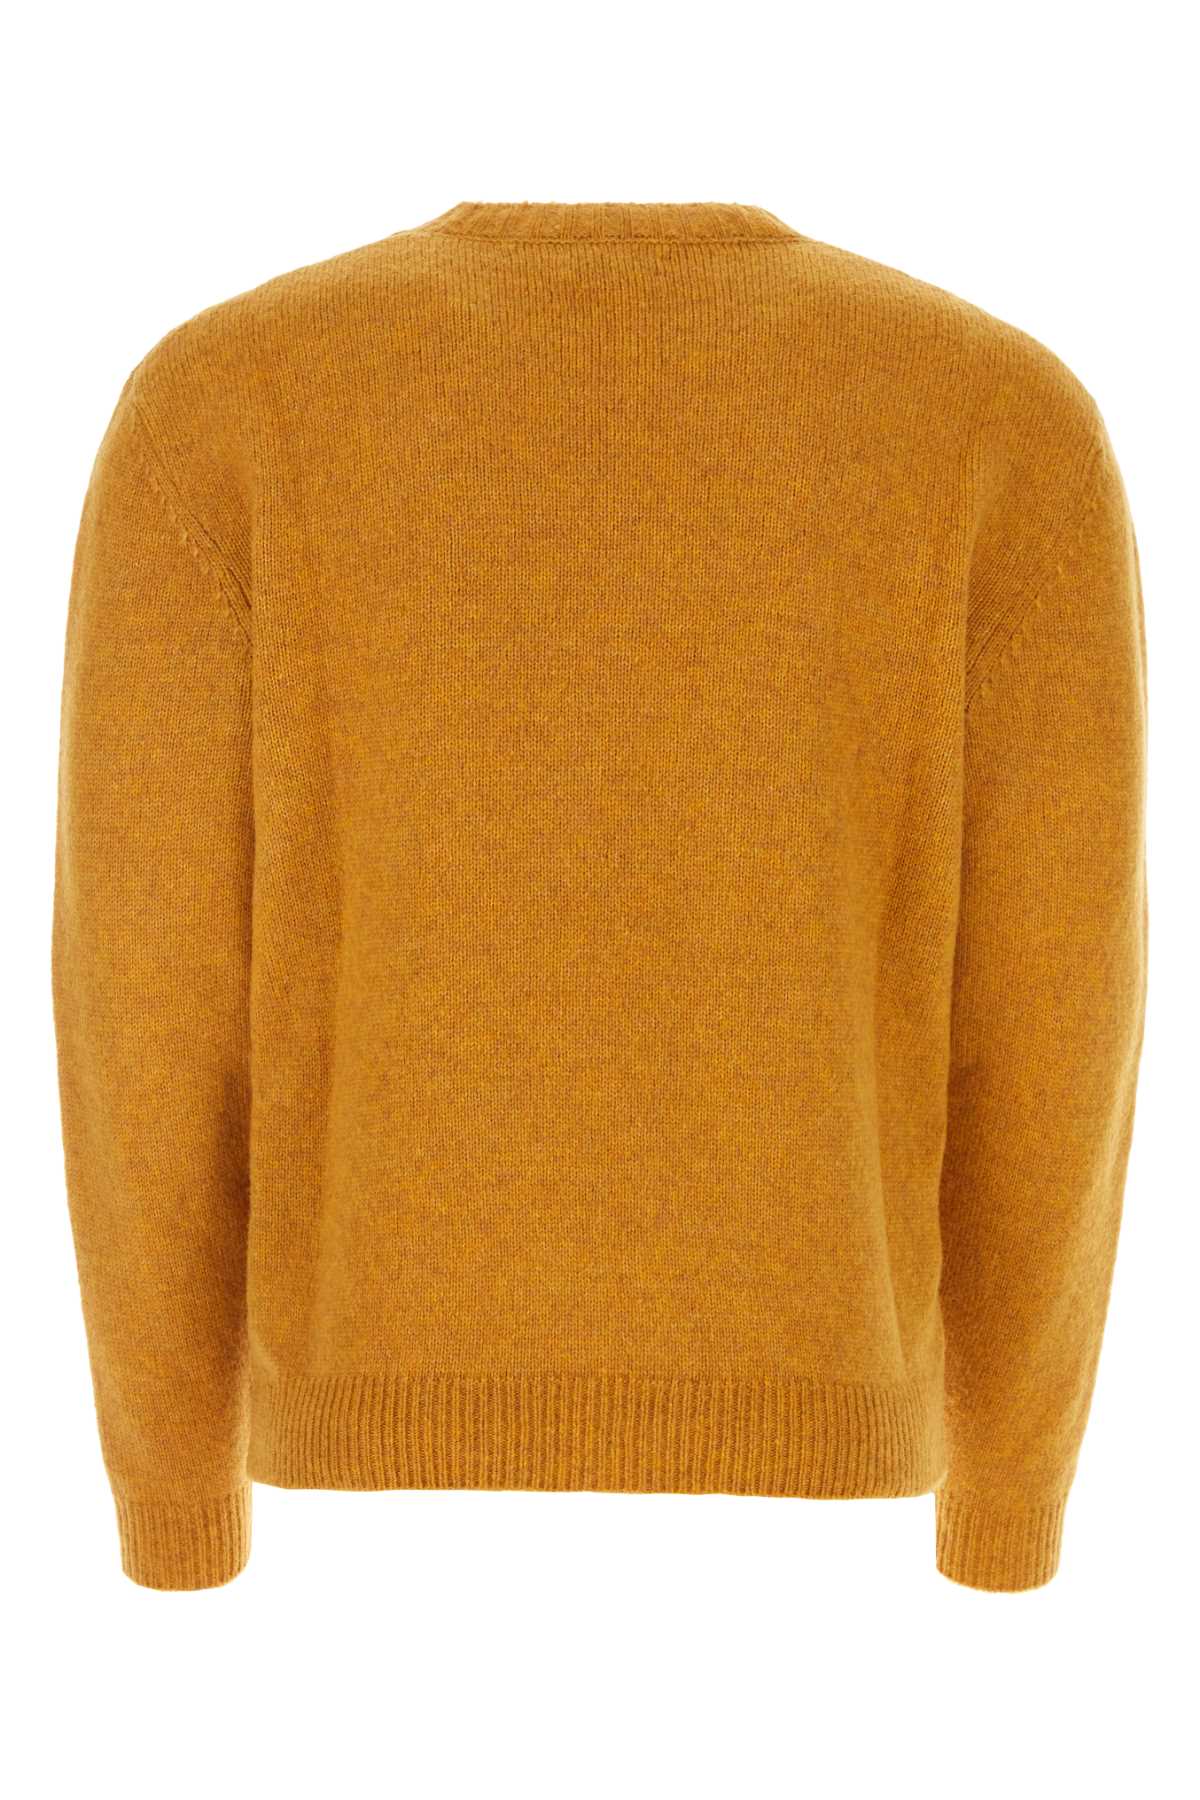 Baracuta Ochre Virgin Wool Blend Sweater